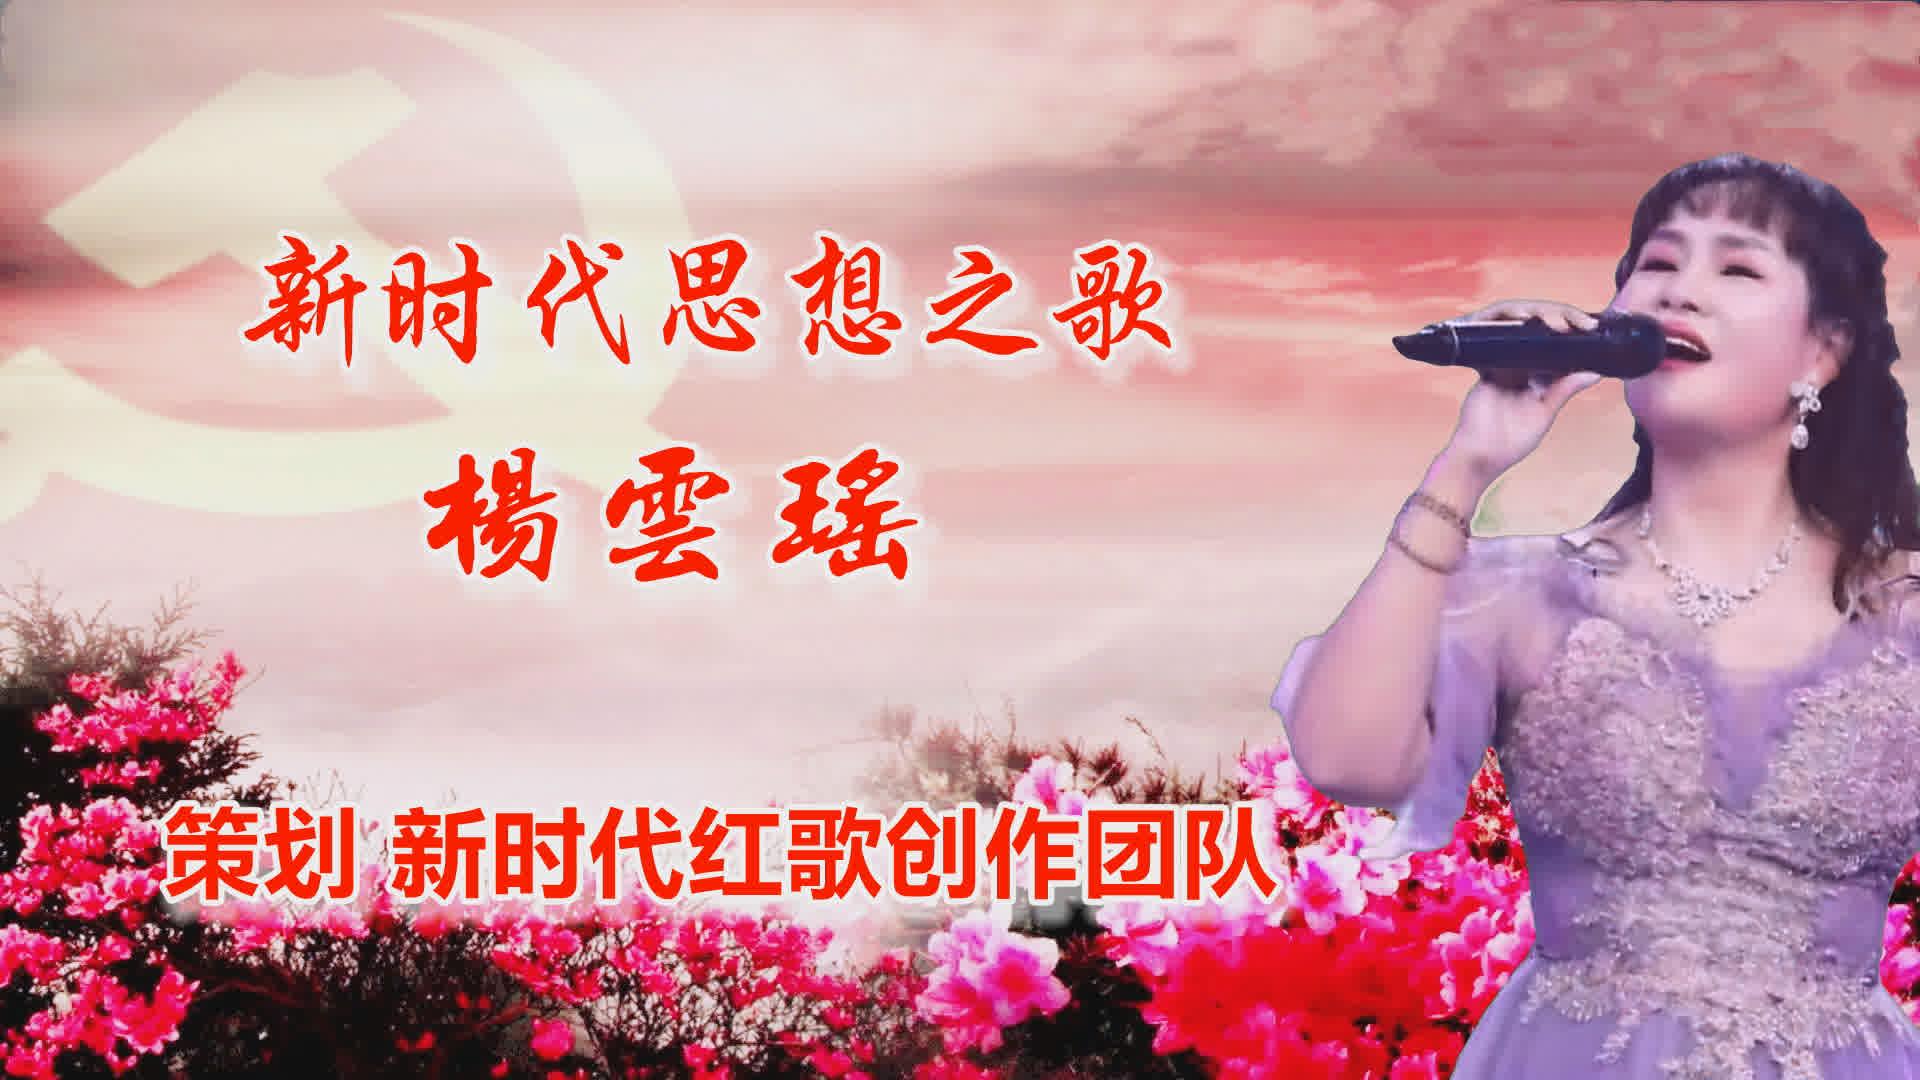 青年歌唱家杨云瑶的新歌《新时代思想之歌》